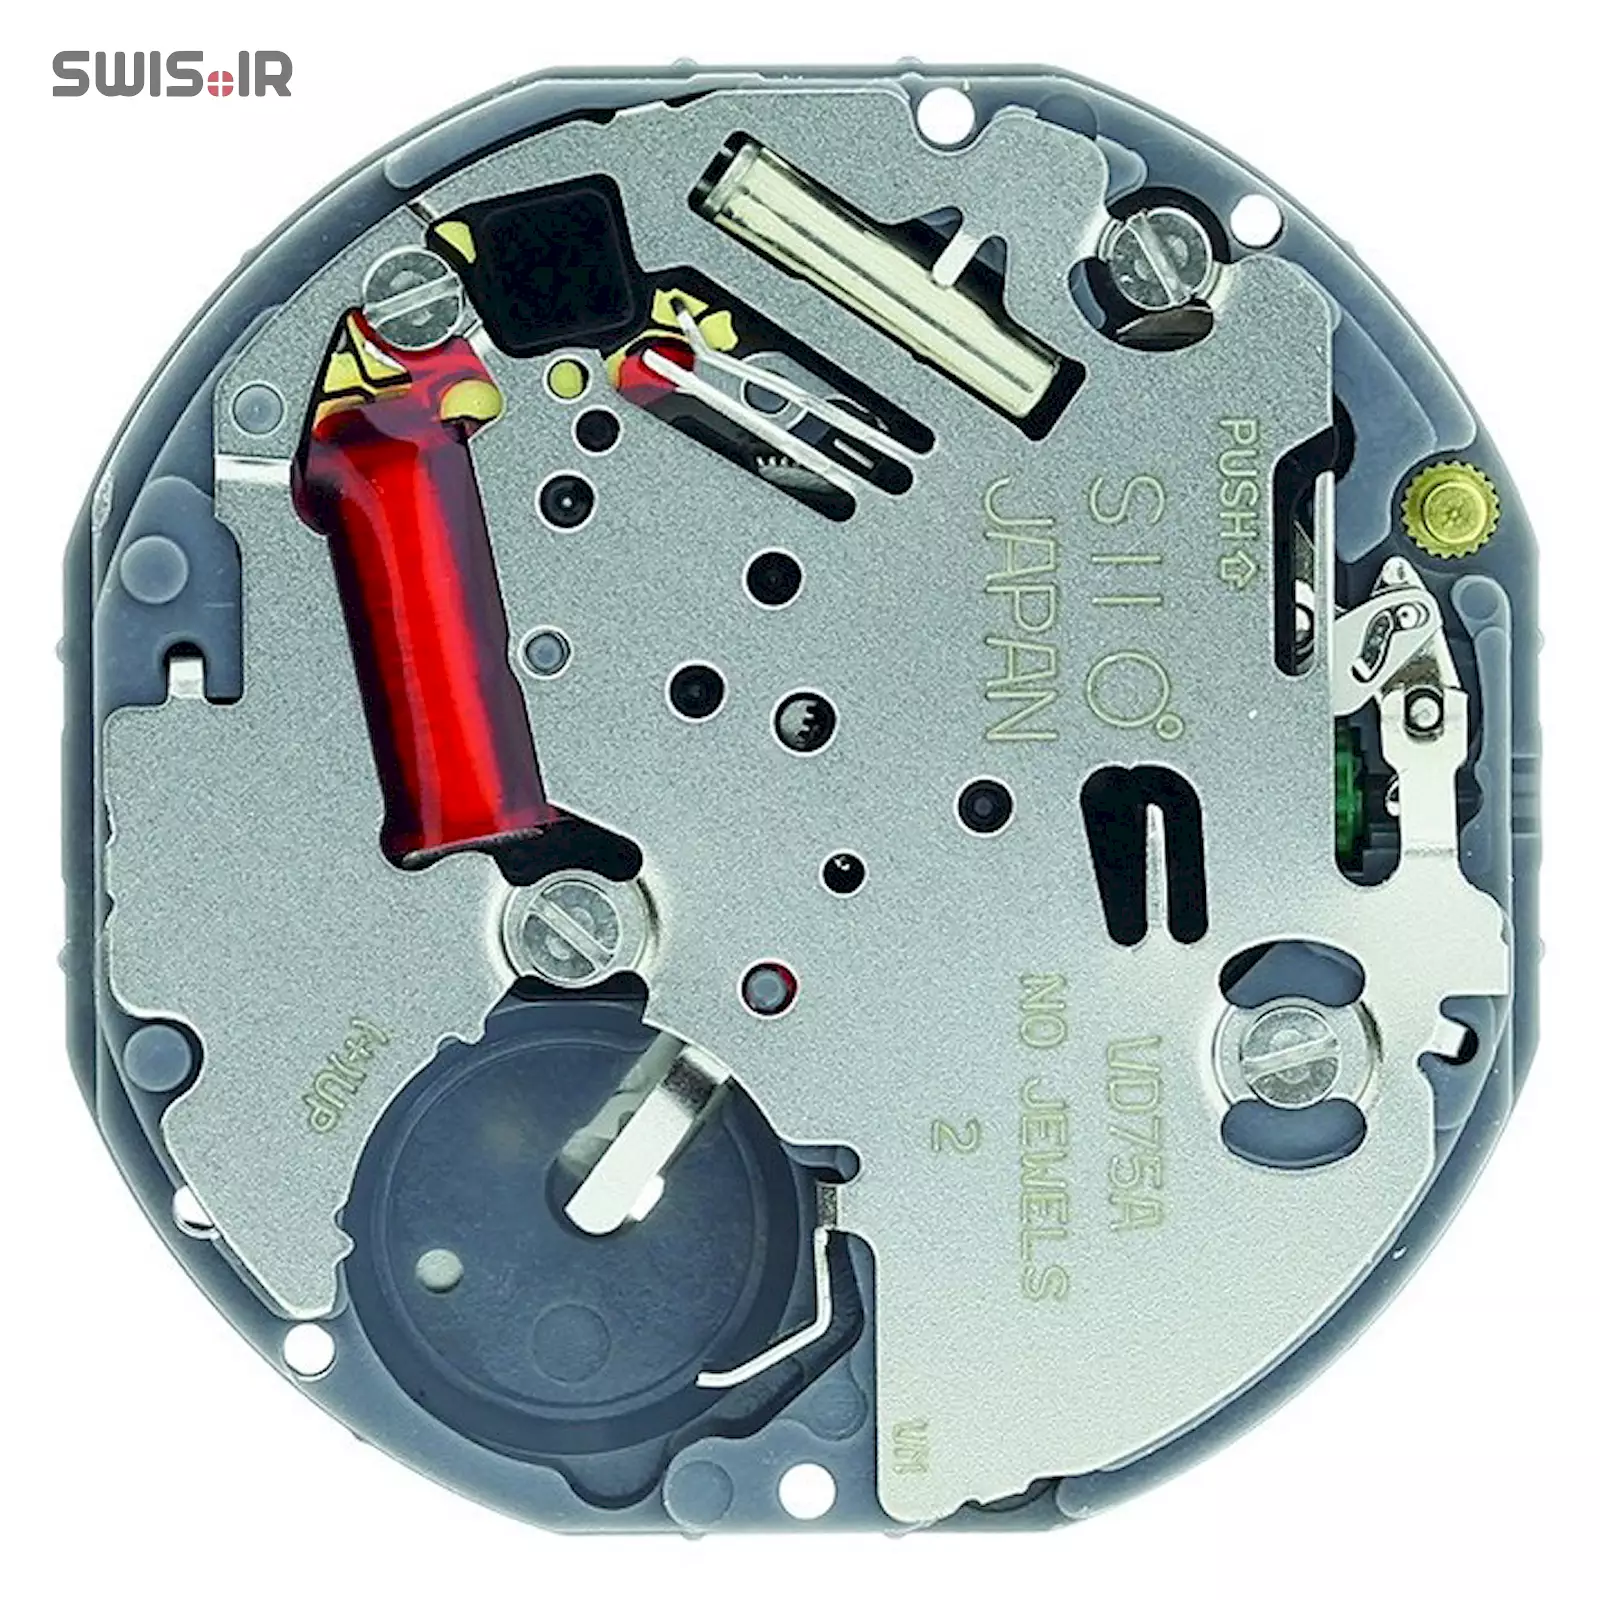 تصویر پشت موتور ساعت کالیبر VD75A-SII ساخت شرکت سیکو ـ اپسون ژاپن